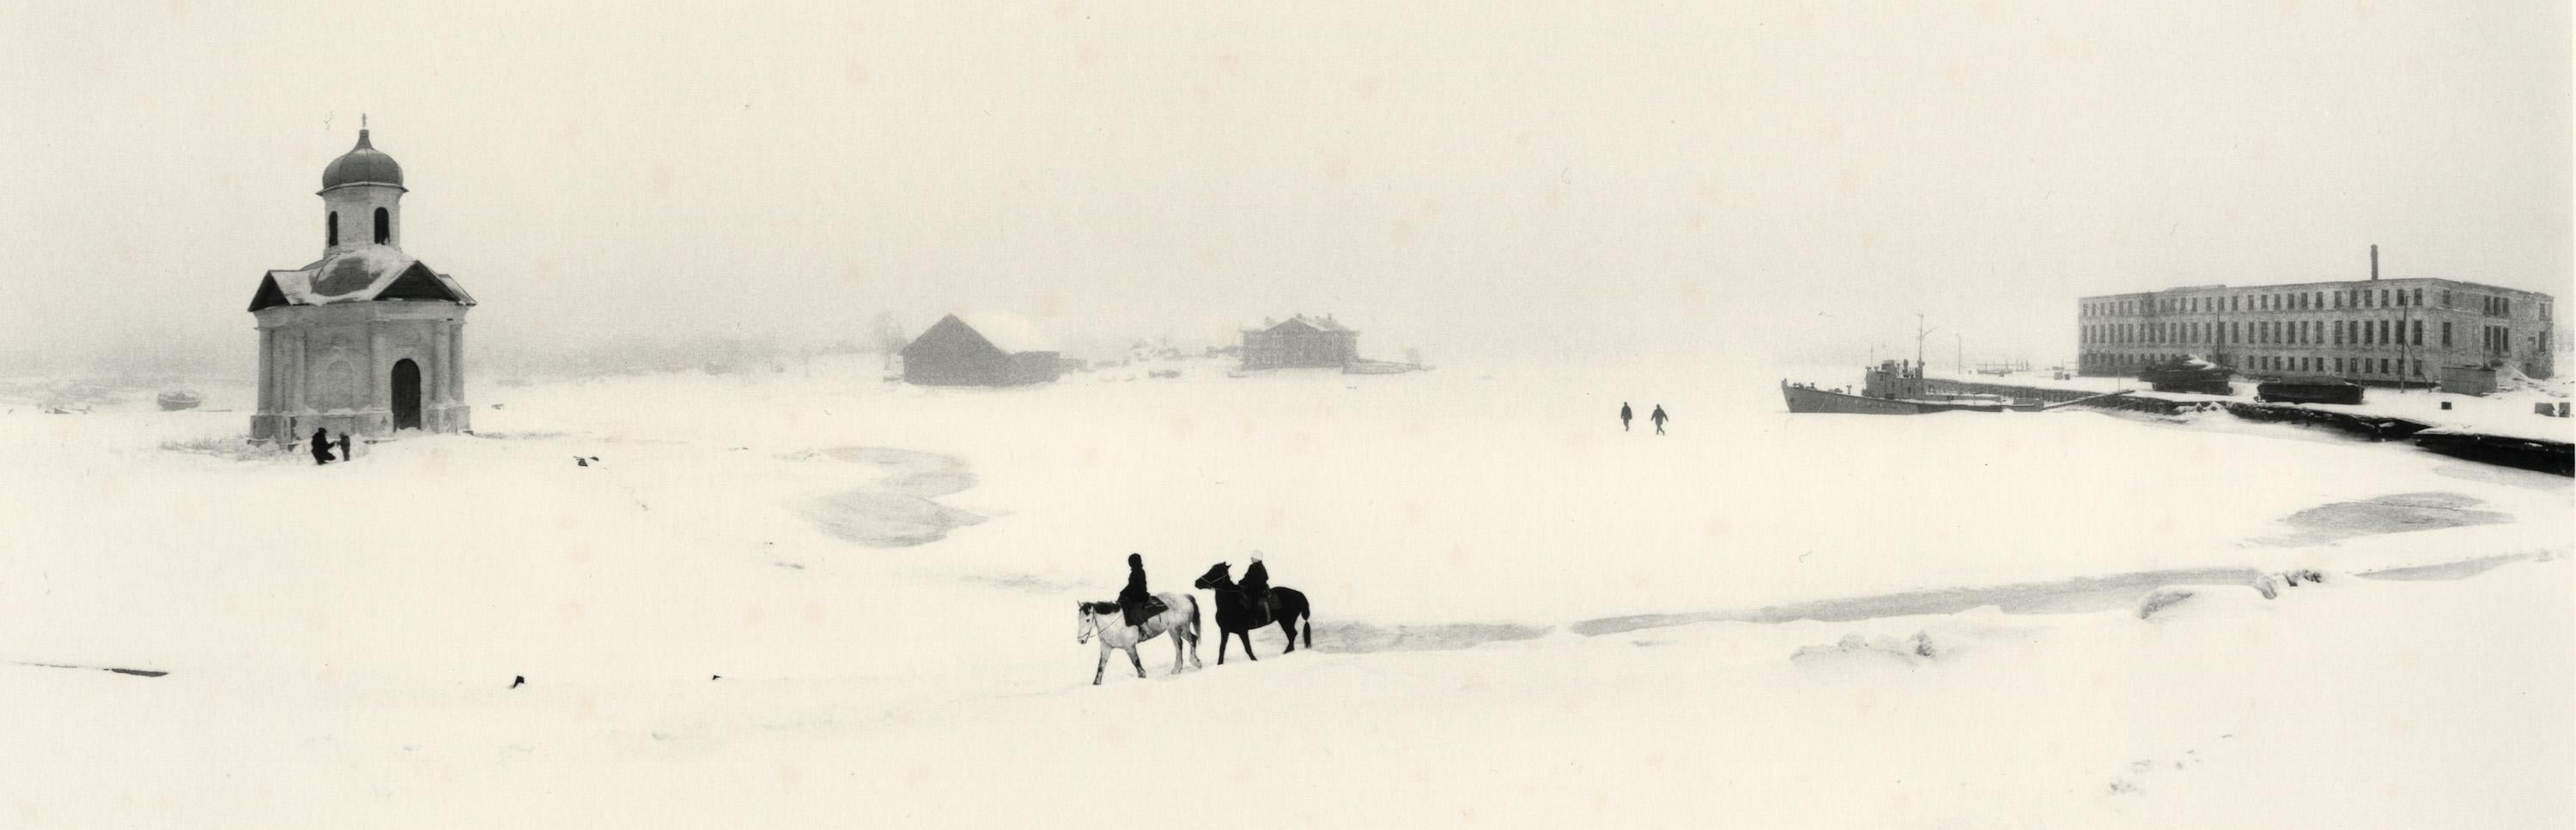 Black and White Photograph Pentti Sammallahti - Solovki, Mer Blanche, Russie (Scène d'hiver, personnes à cheval)